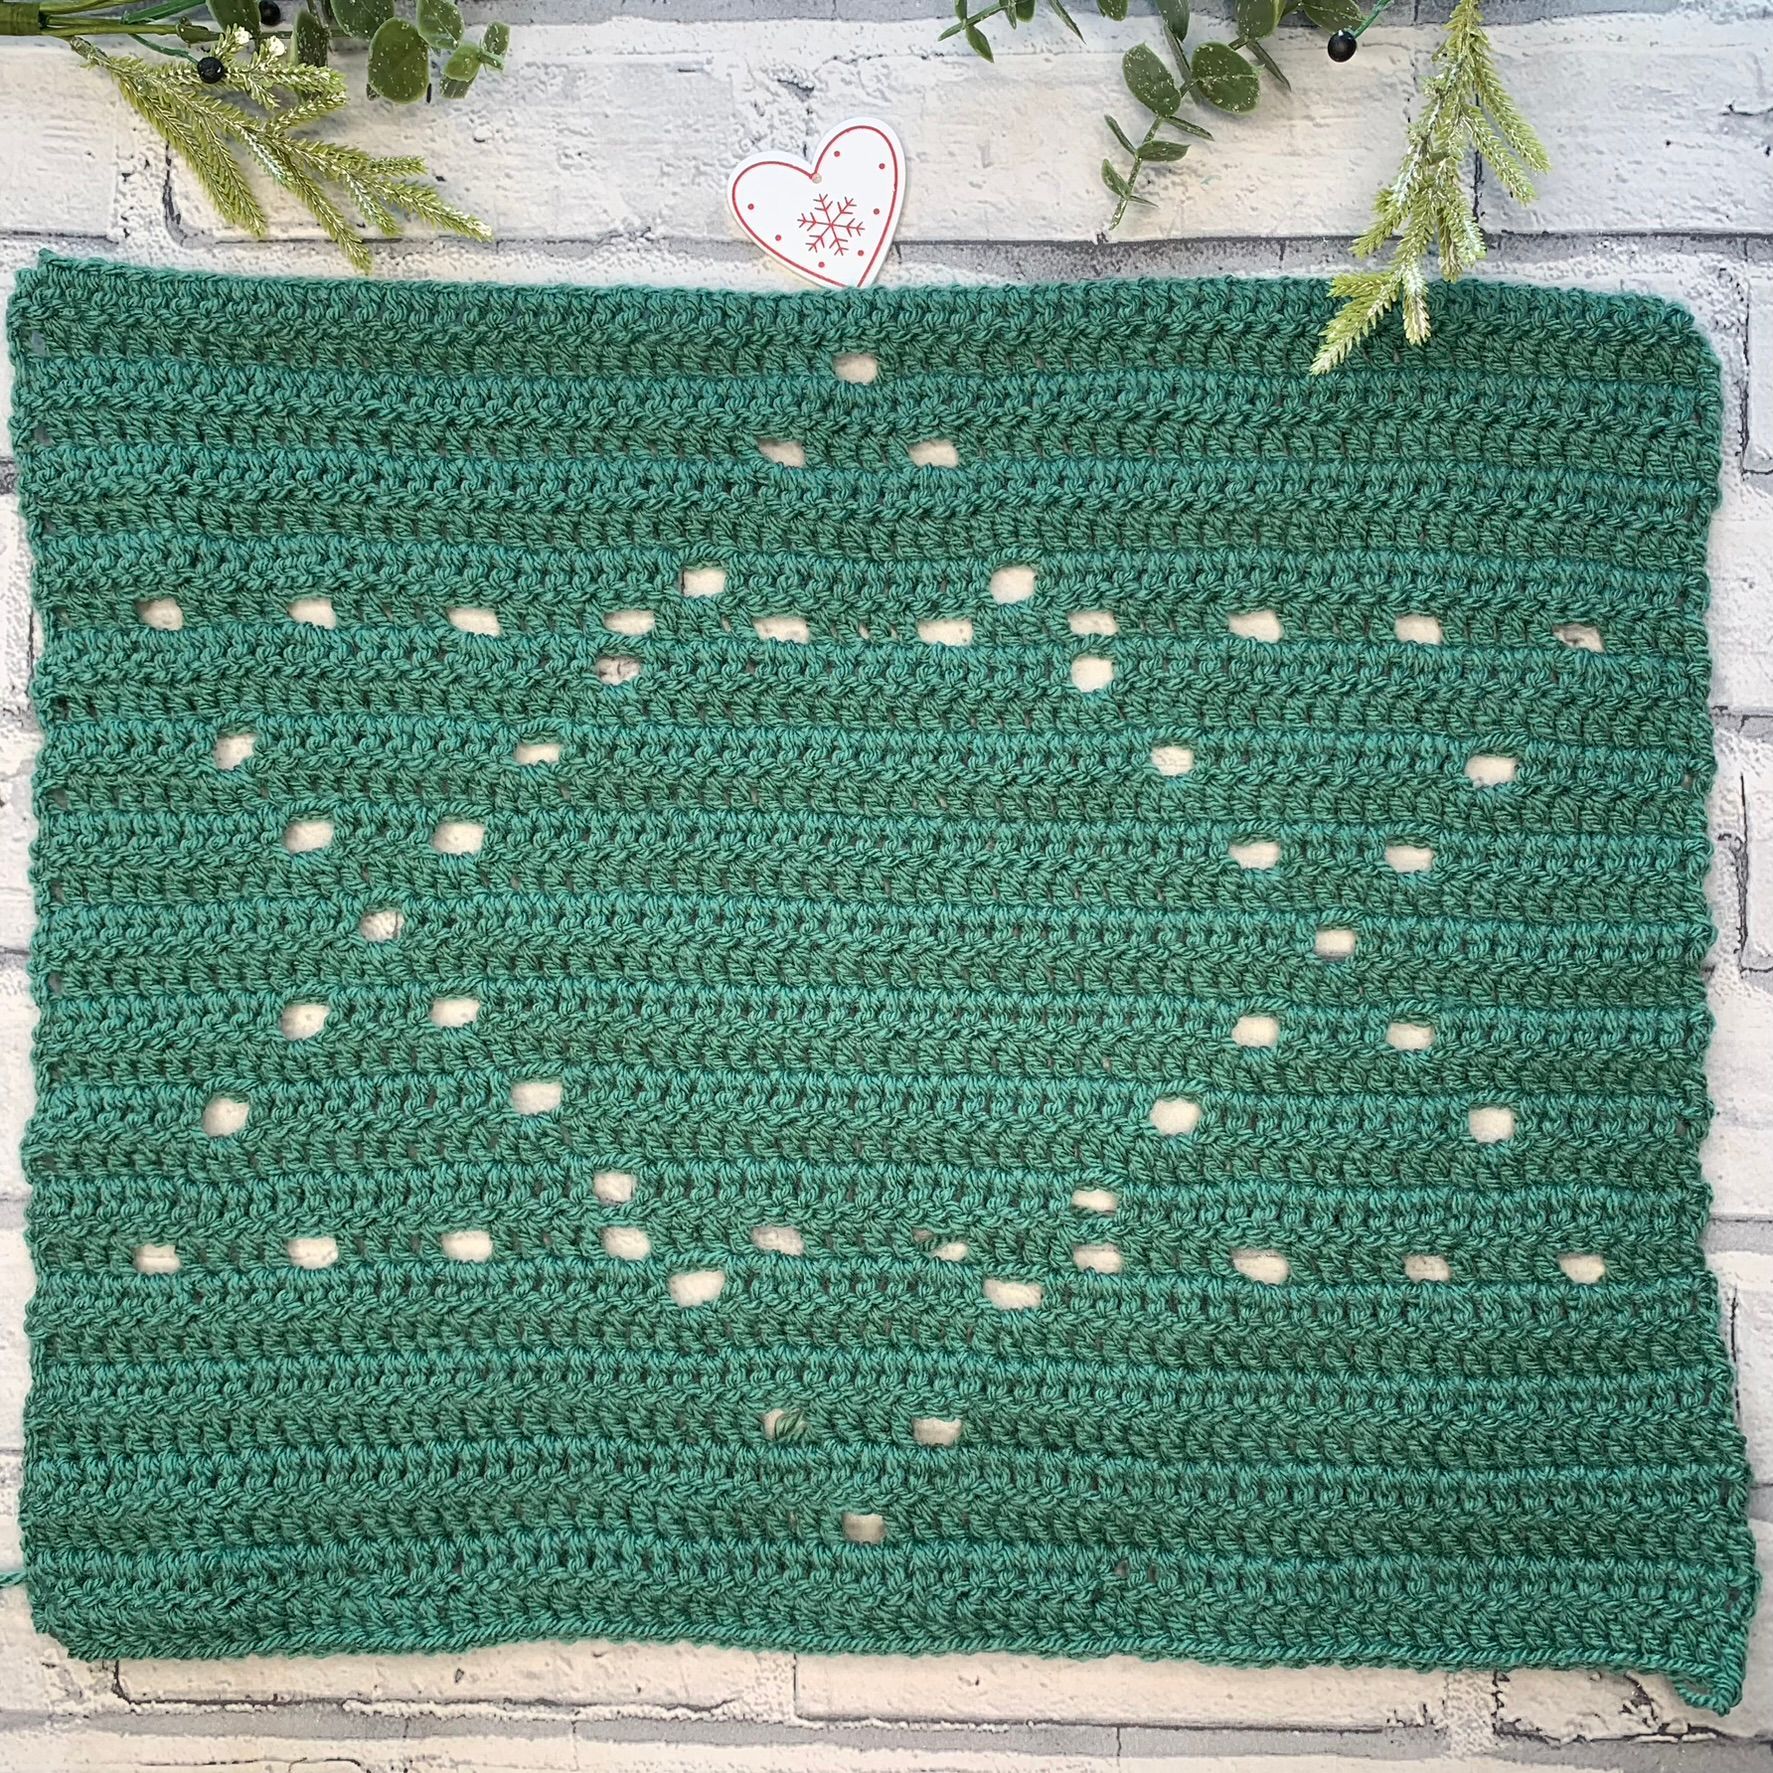 Star of David Filet Crochet Pattern